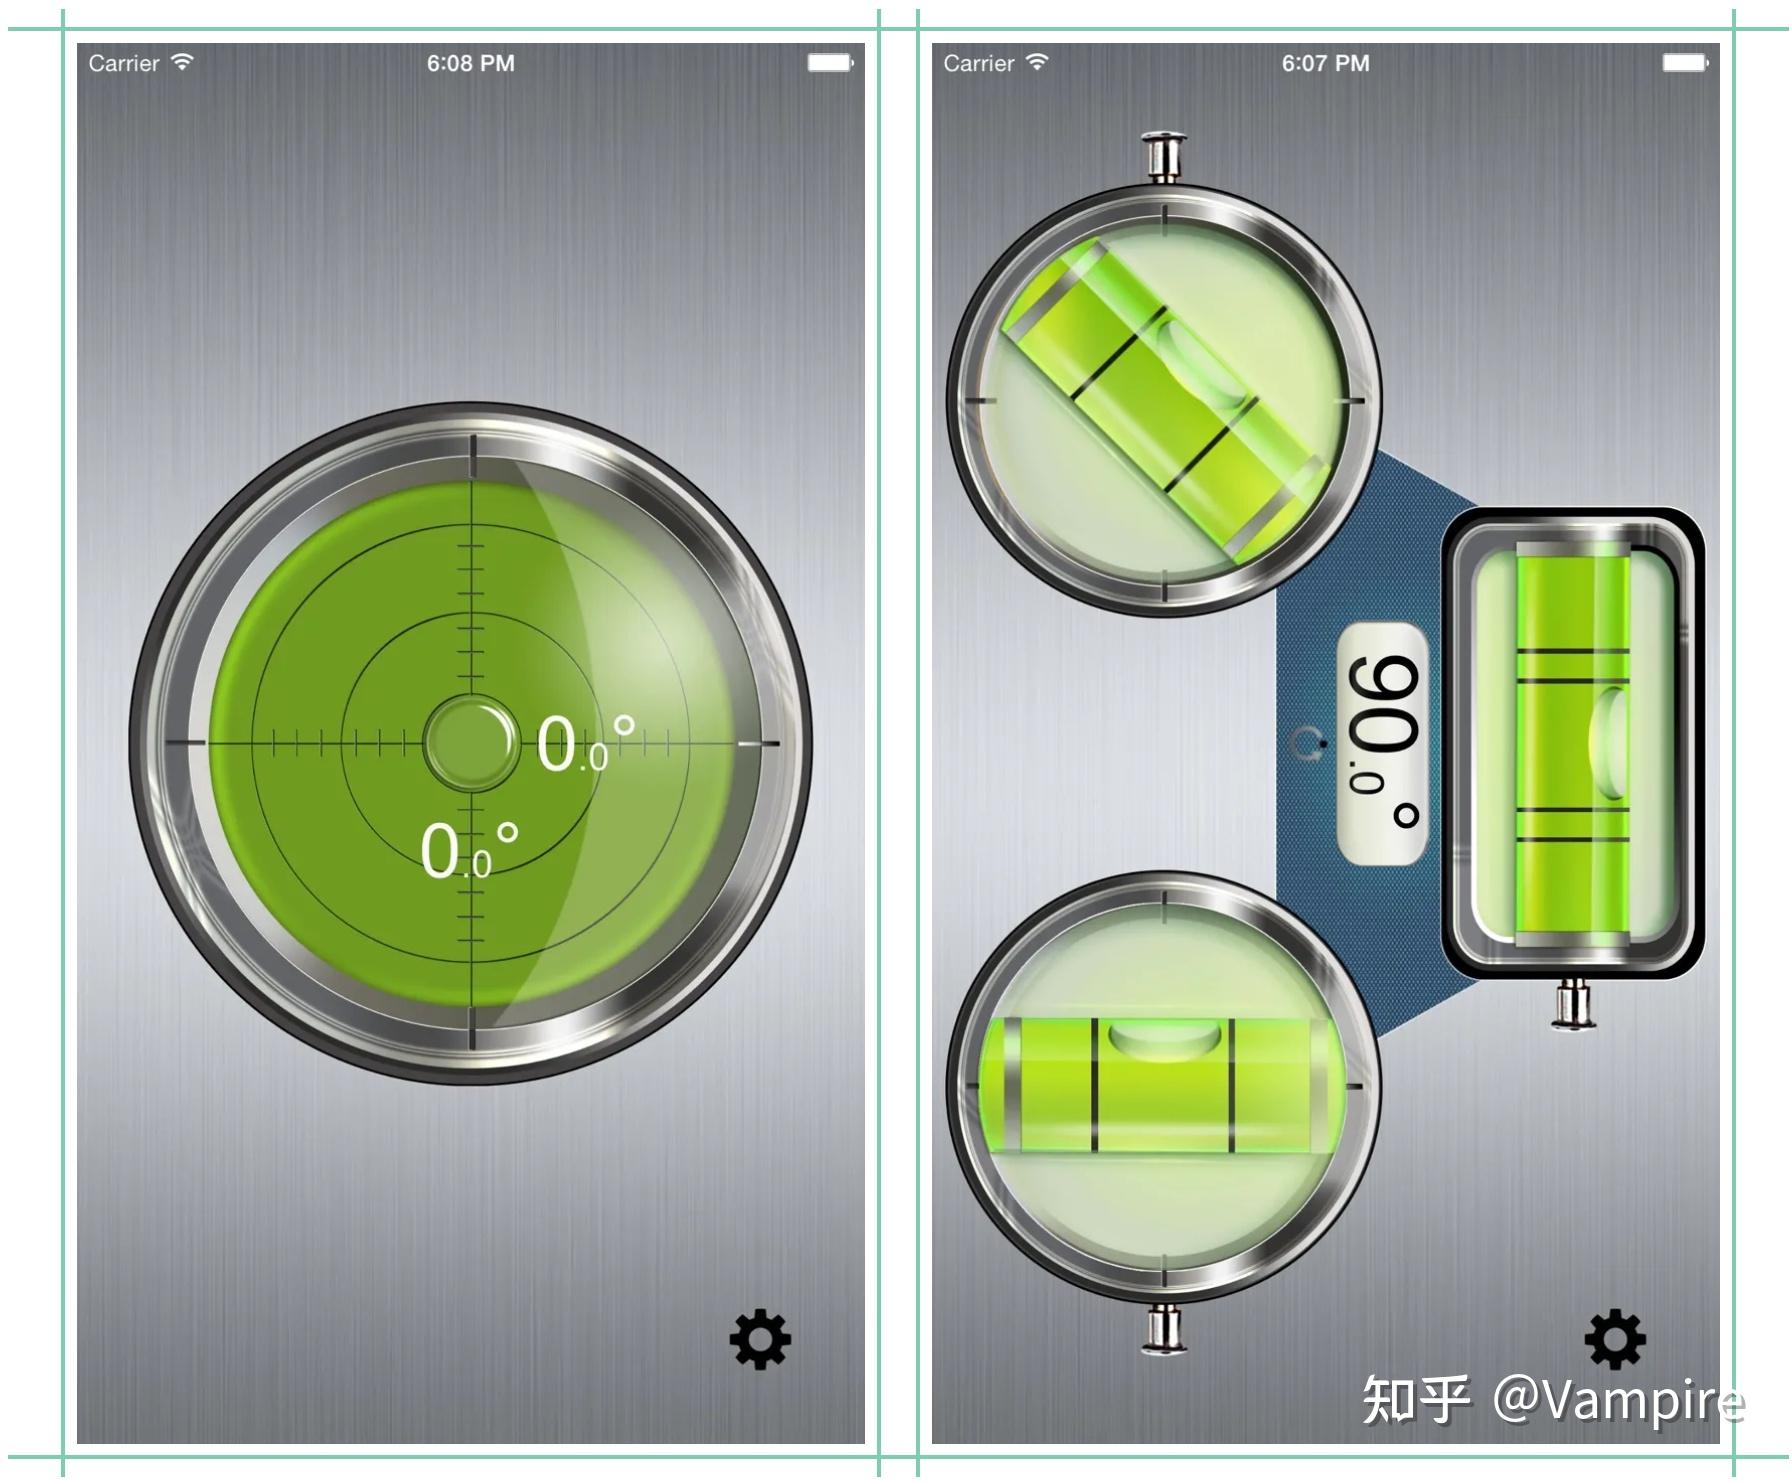 【￥6→免费】 iphone丨ipad精准水平仪,包含水平管及水平泡两种测量